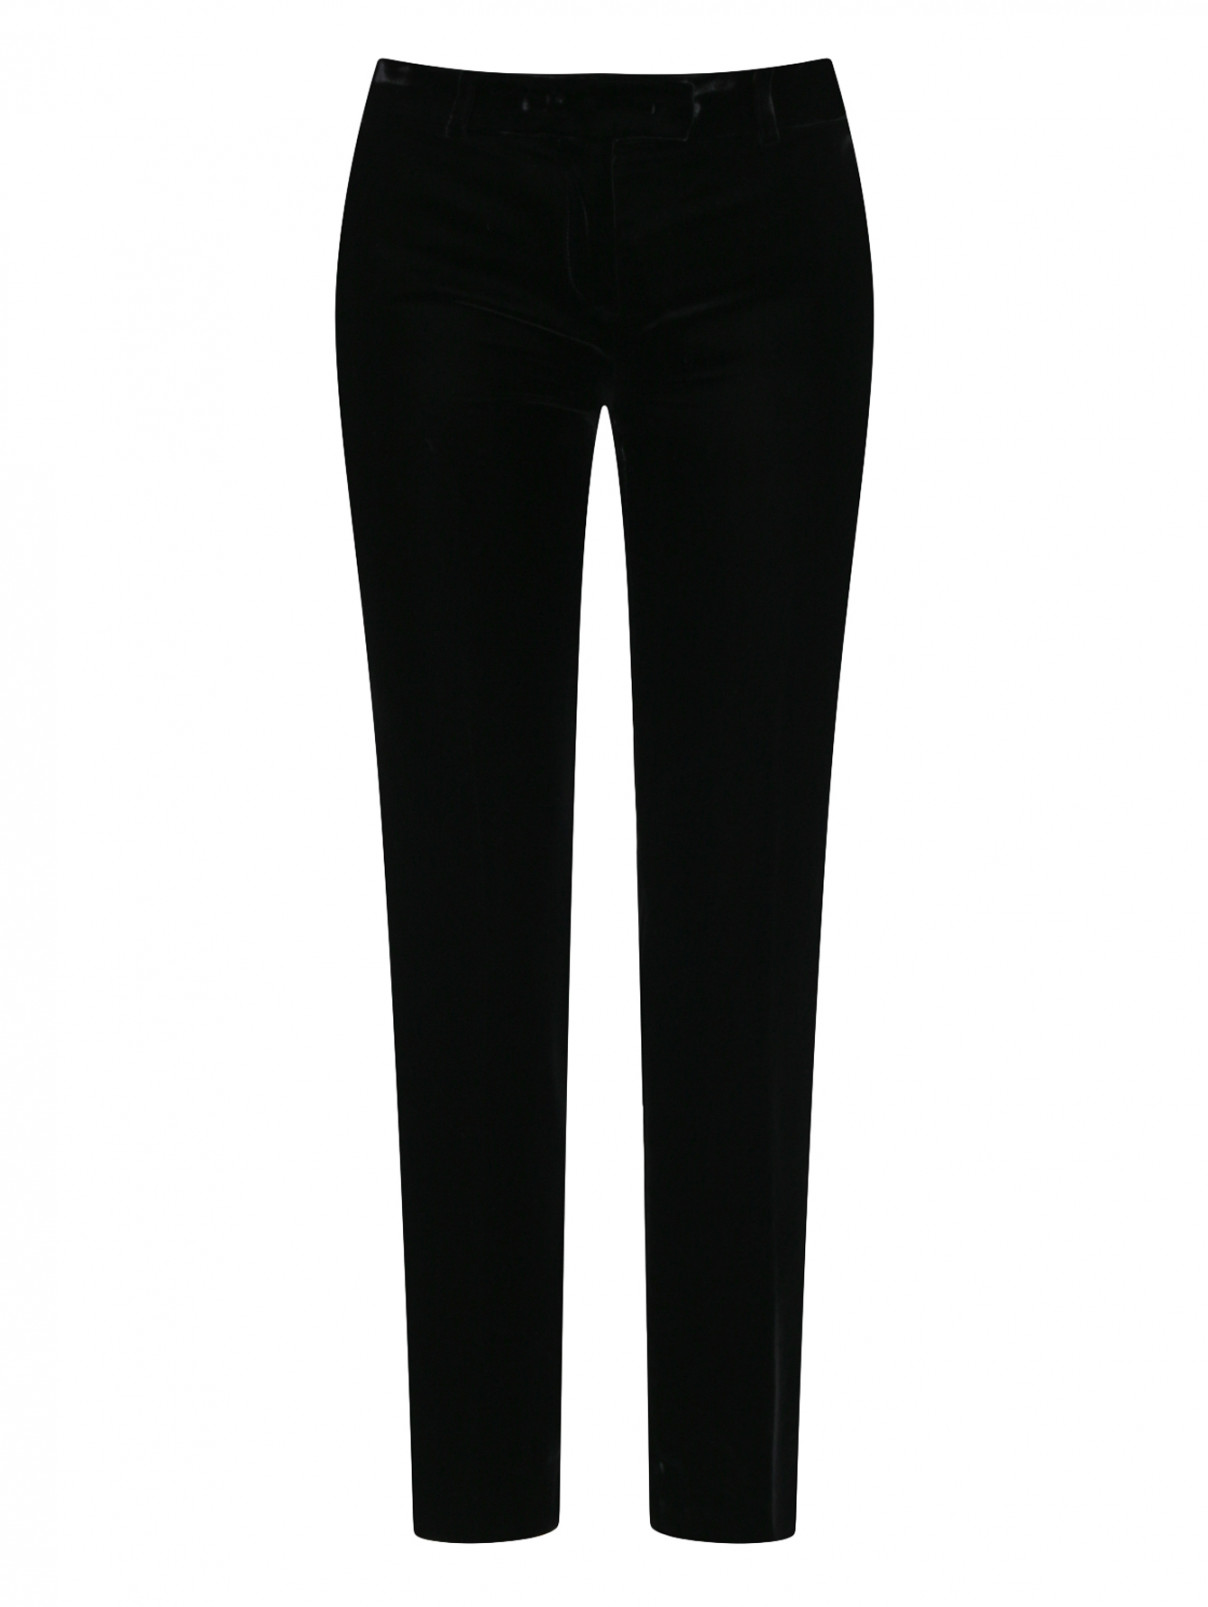 Бархатные брюки с лампасами Ermanno Scervino  –  Общий вид  – Цвет:  Черный